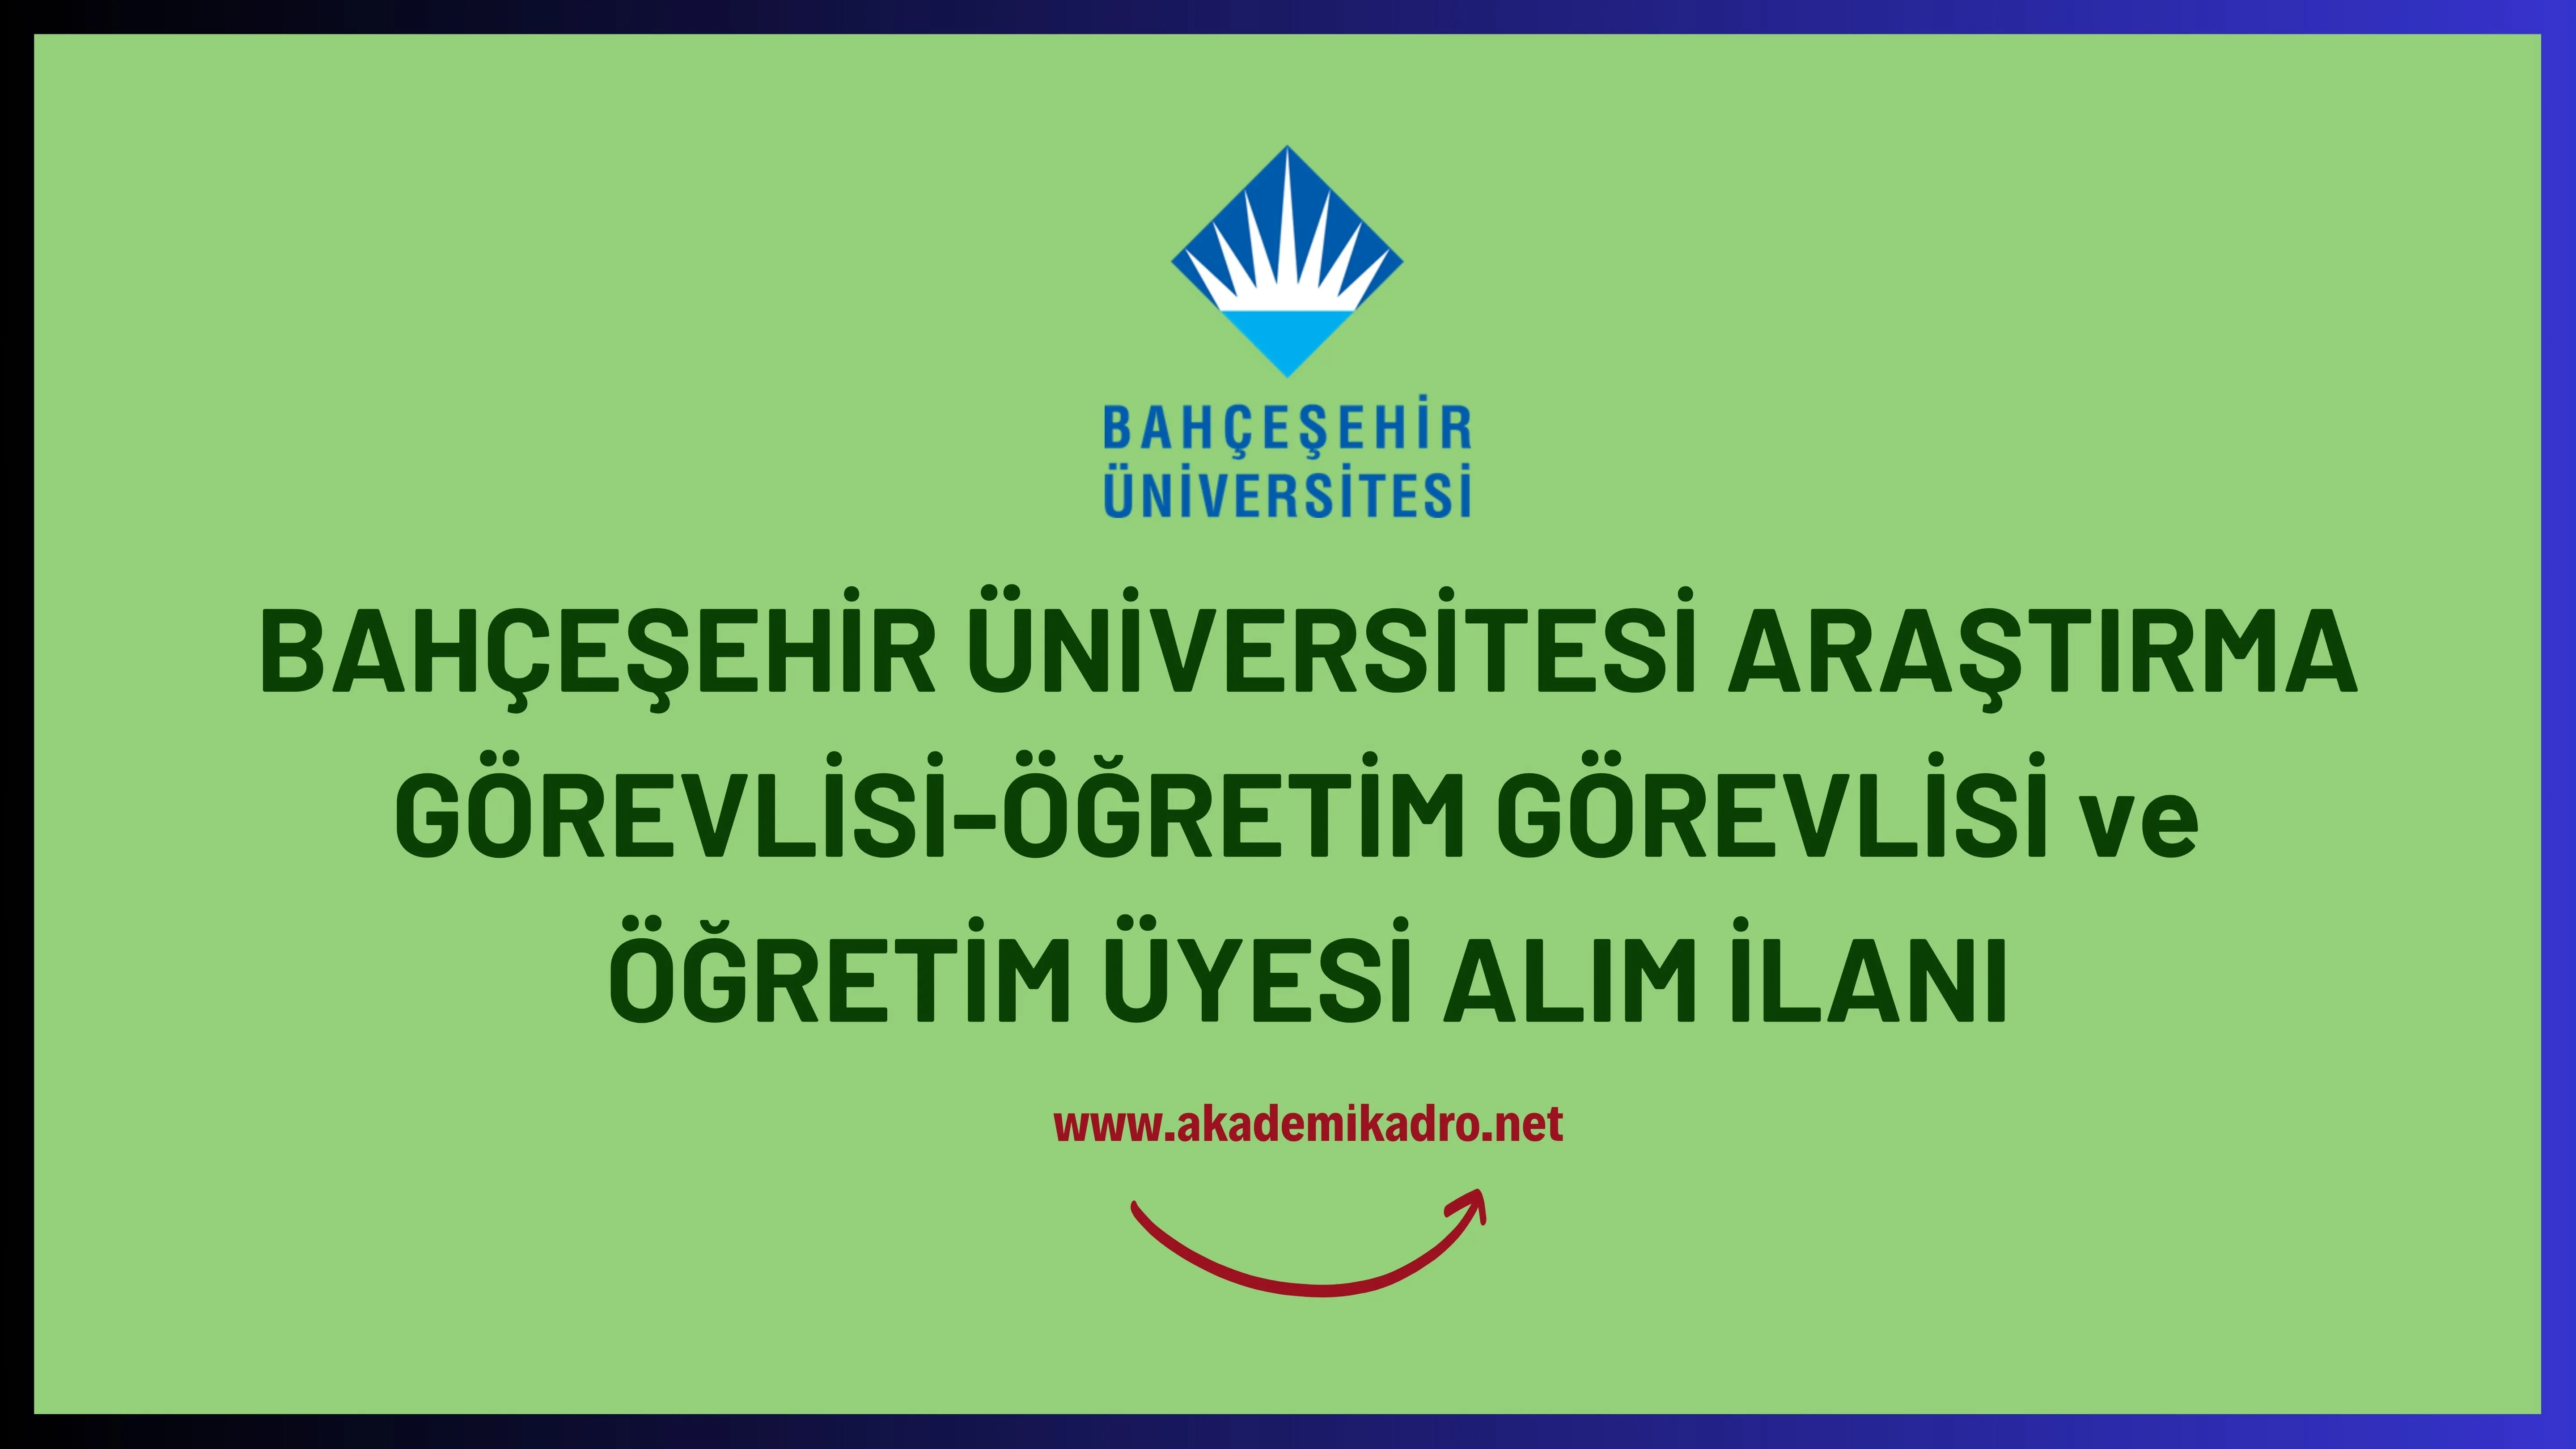 Bahçeşehir Üniversitesi 13 Araştırma görevlisi ve 64 Öğretim üyesi alacak.